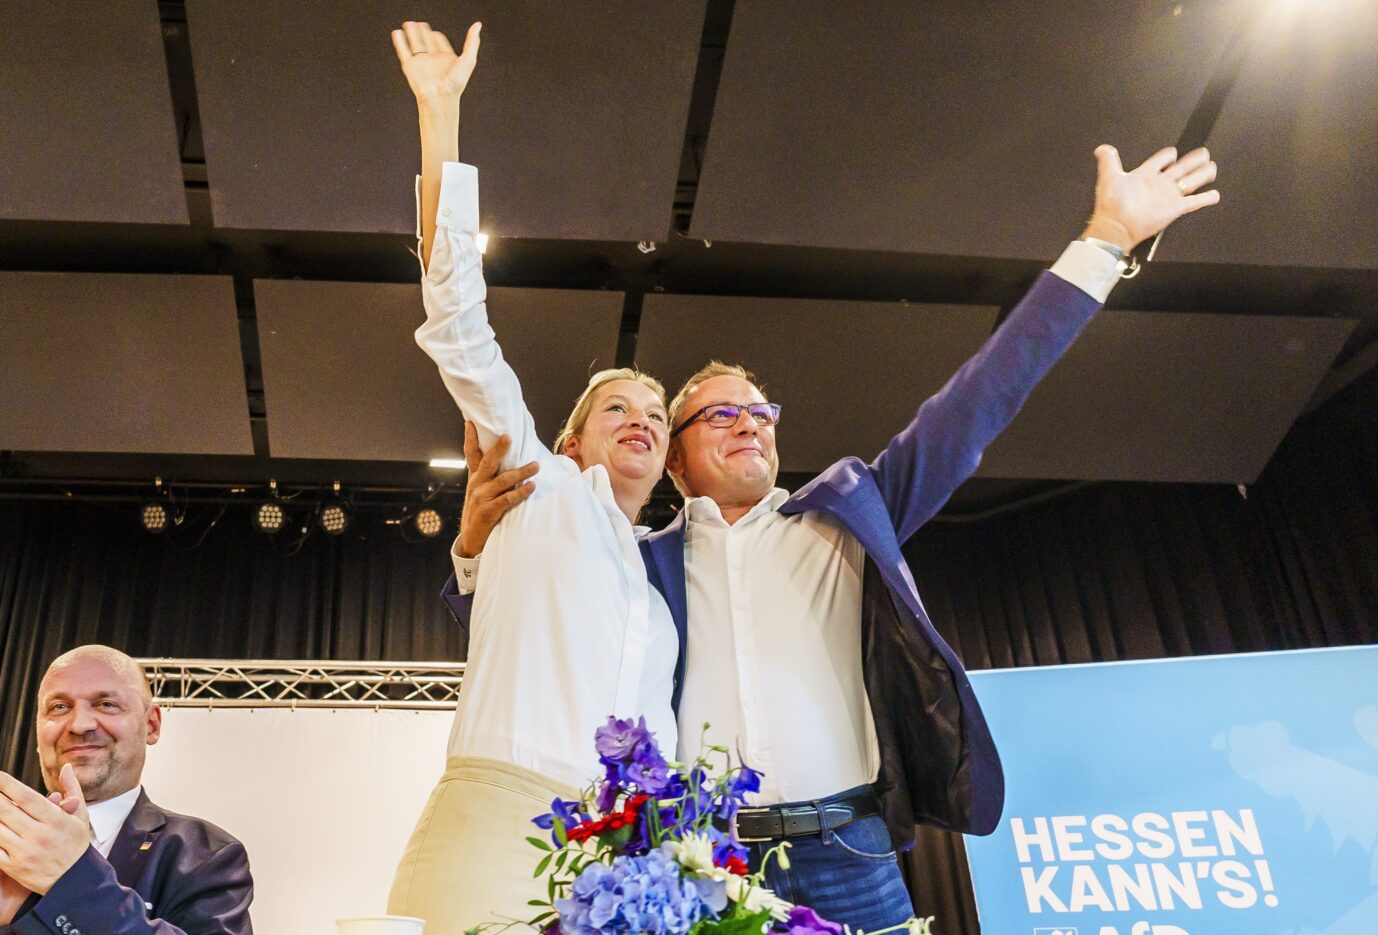 Jubel: Die AfD-Vorsitzenden Alice Weidel und Tino Chrupalla beim Landtagswahlkampf in Hessen. Foto: picture alliance/dpa | Andreas Arnold